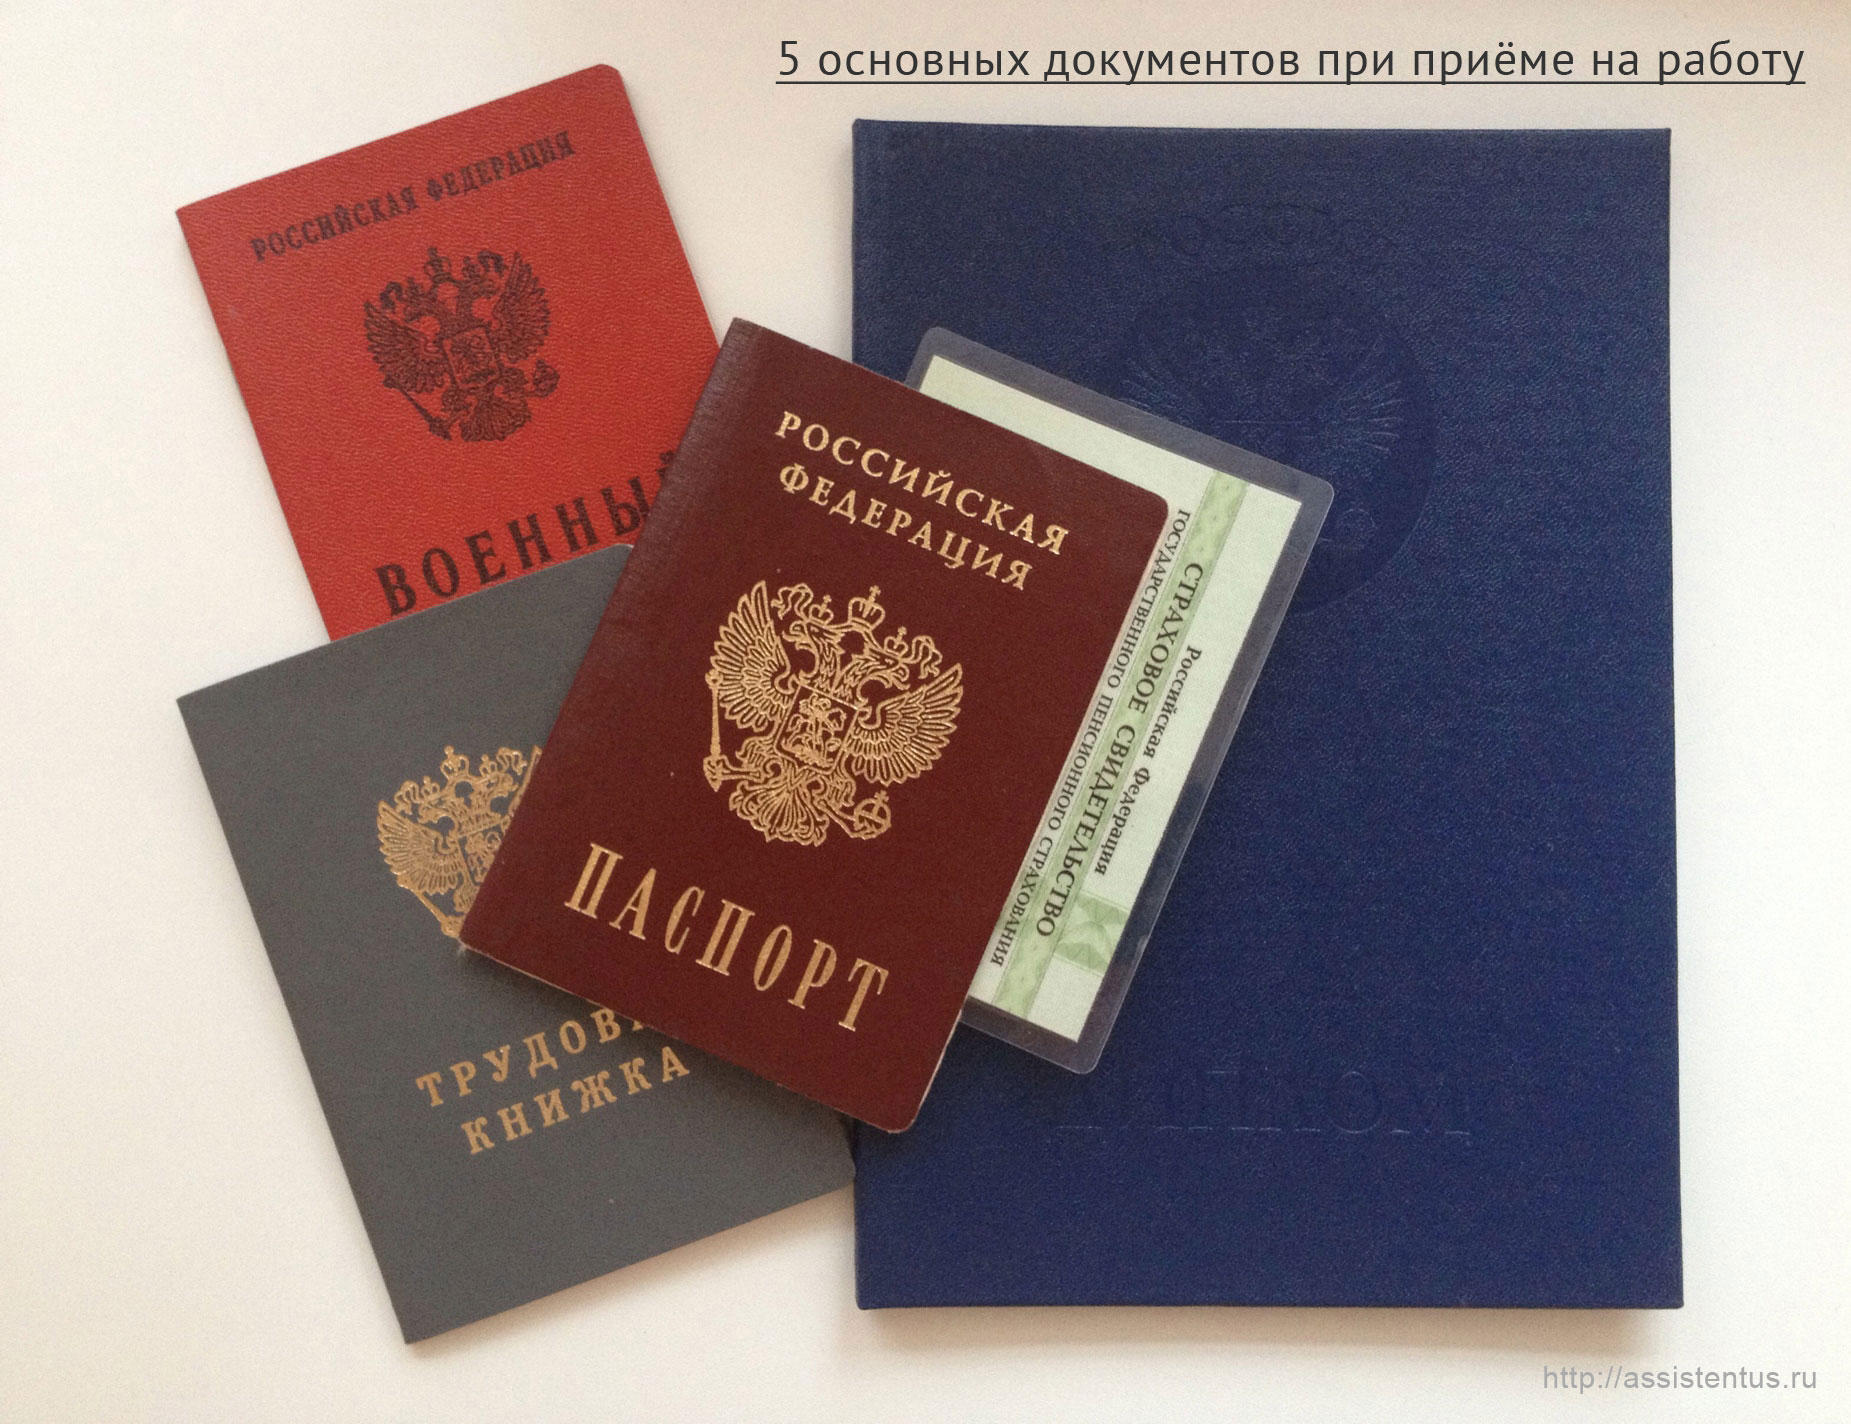 Изображение - Какие документы надо предоставить 5-osnovnyh-dokumentov-pri-priyome-na-rabotu